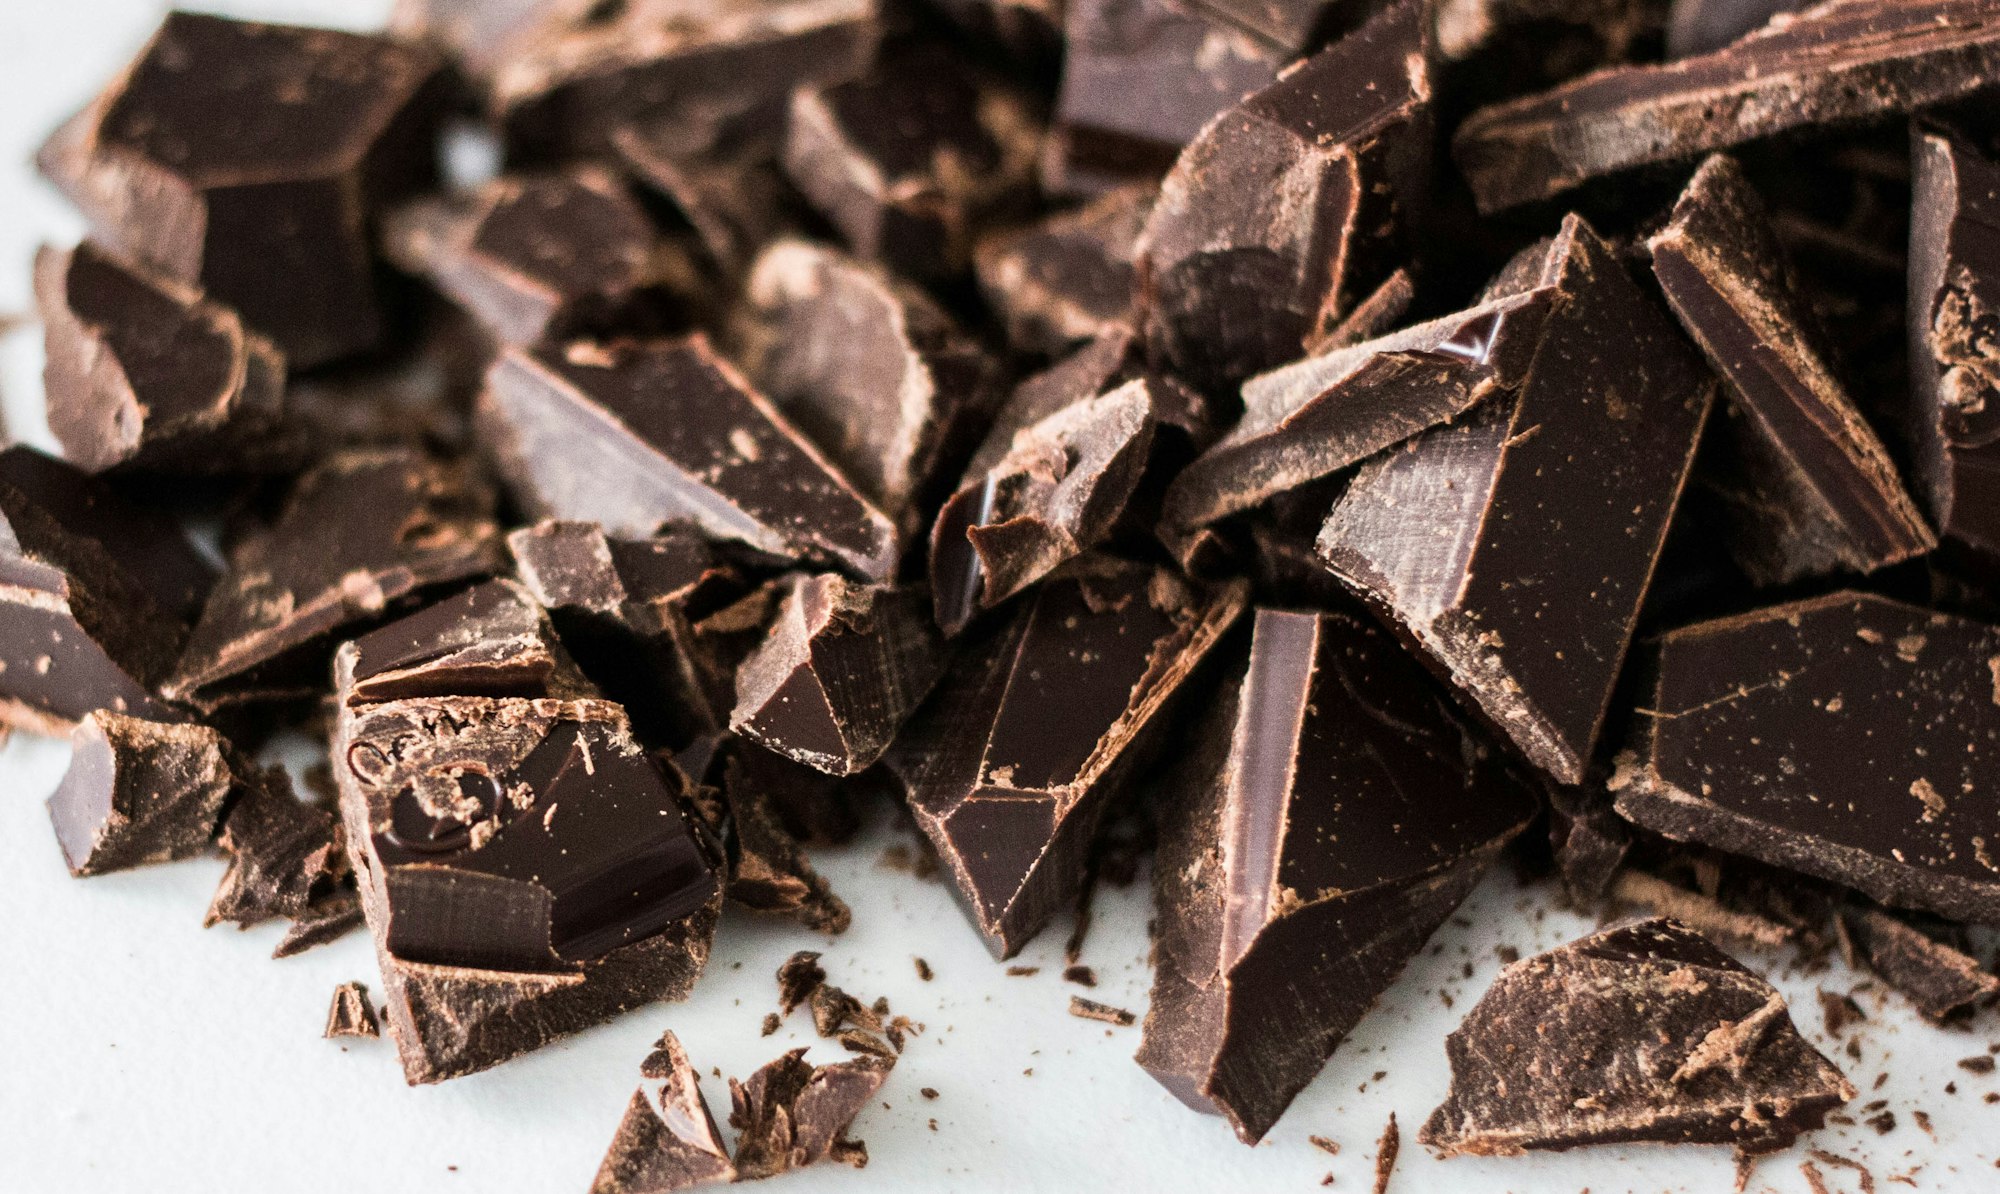 Dia do chocolate: veja quais são as marcas mais lembradas pelos brasileiros